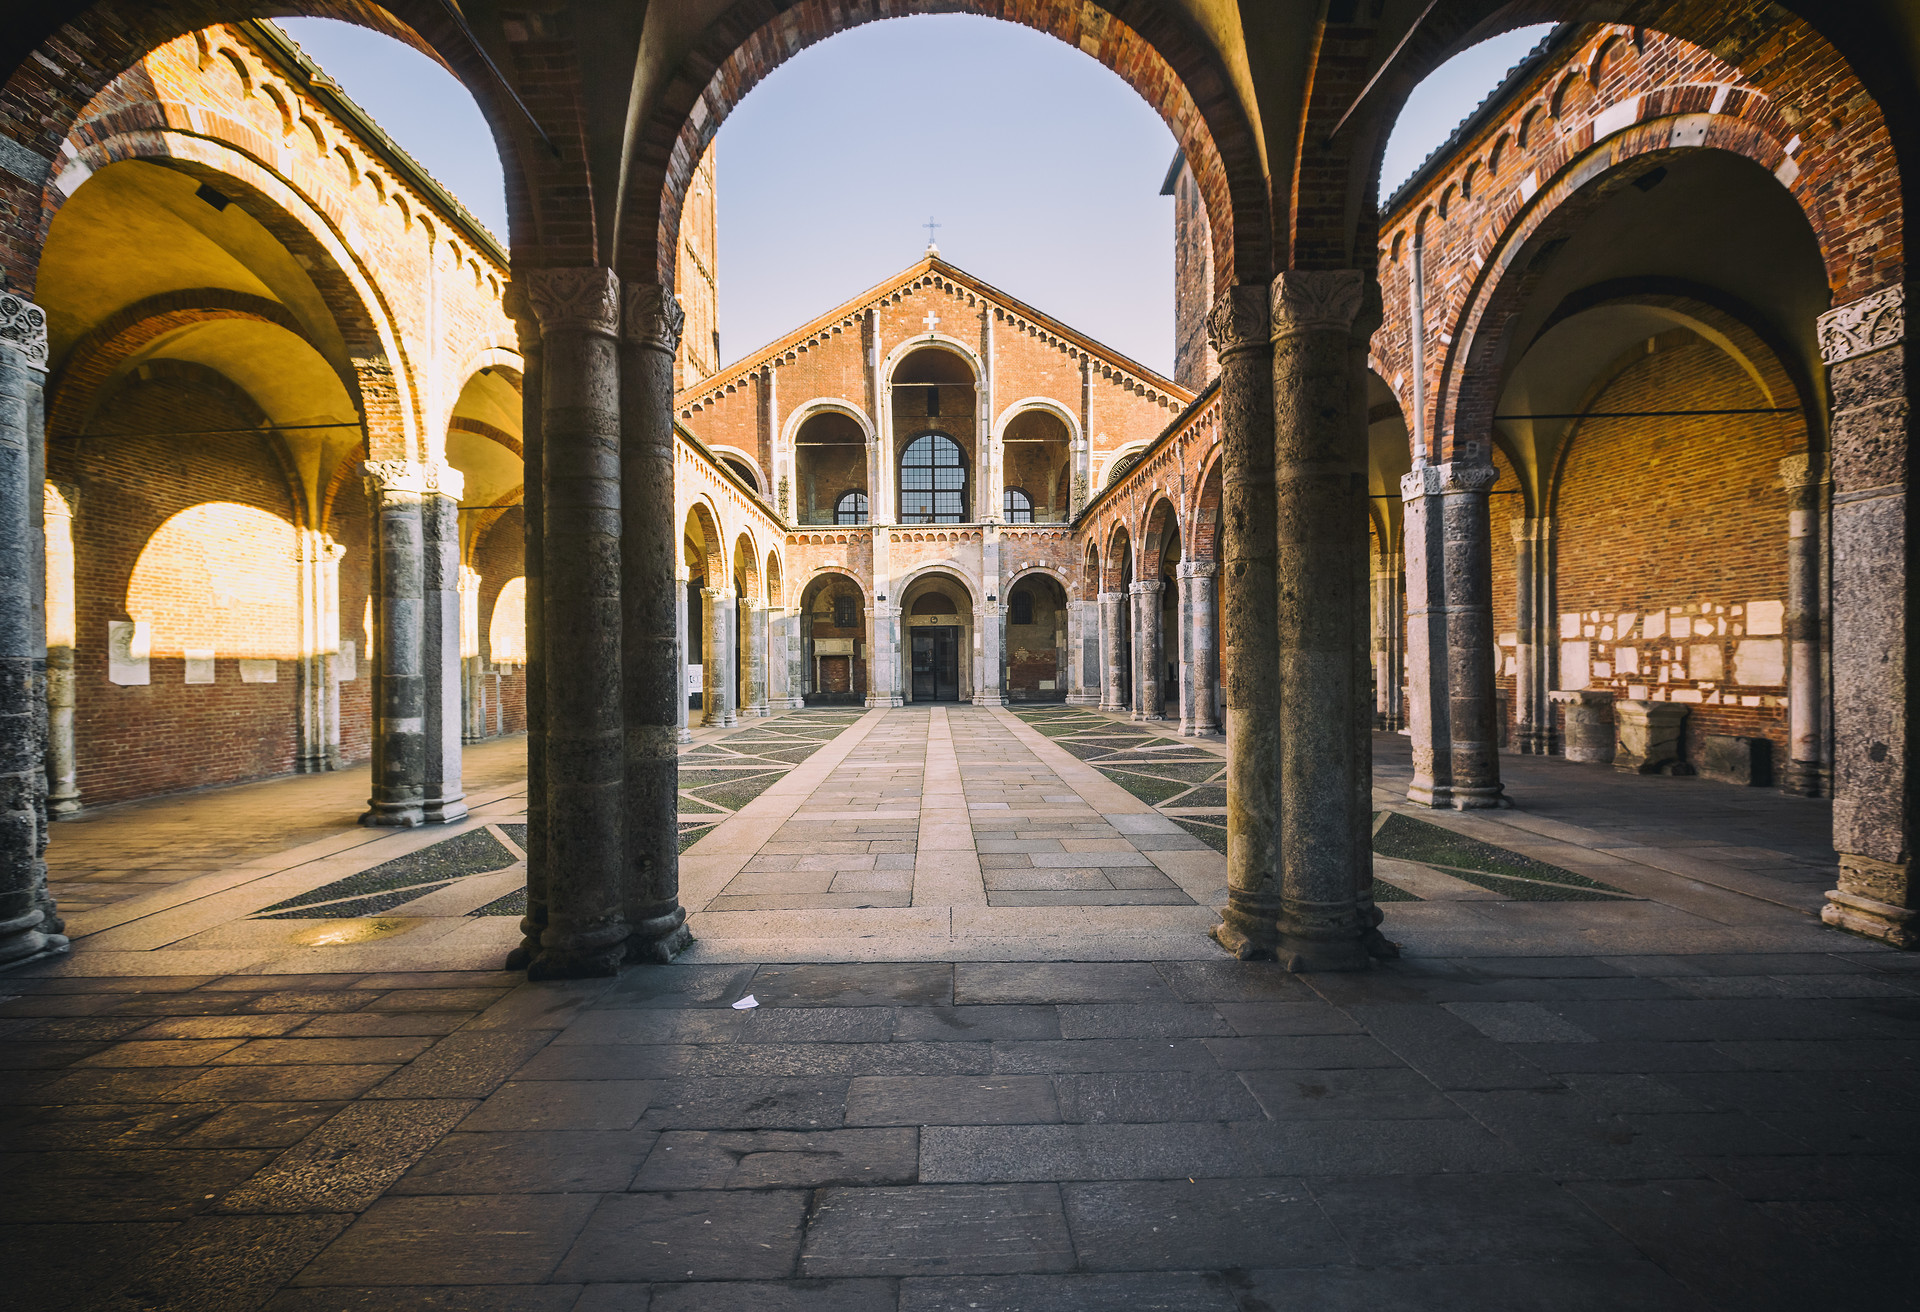 De Basiliek van Sint-Ambrosius is een van de oudste kerken in Milaan en werd in de 11e eeuw herbouwd in romaanse stijl